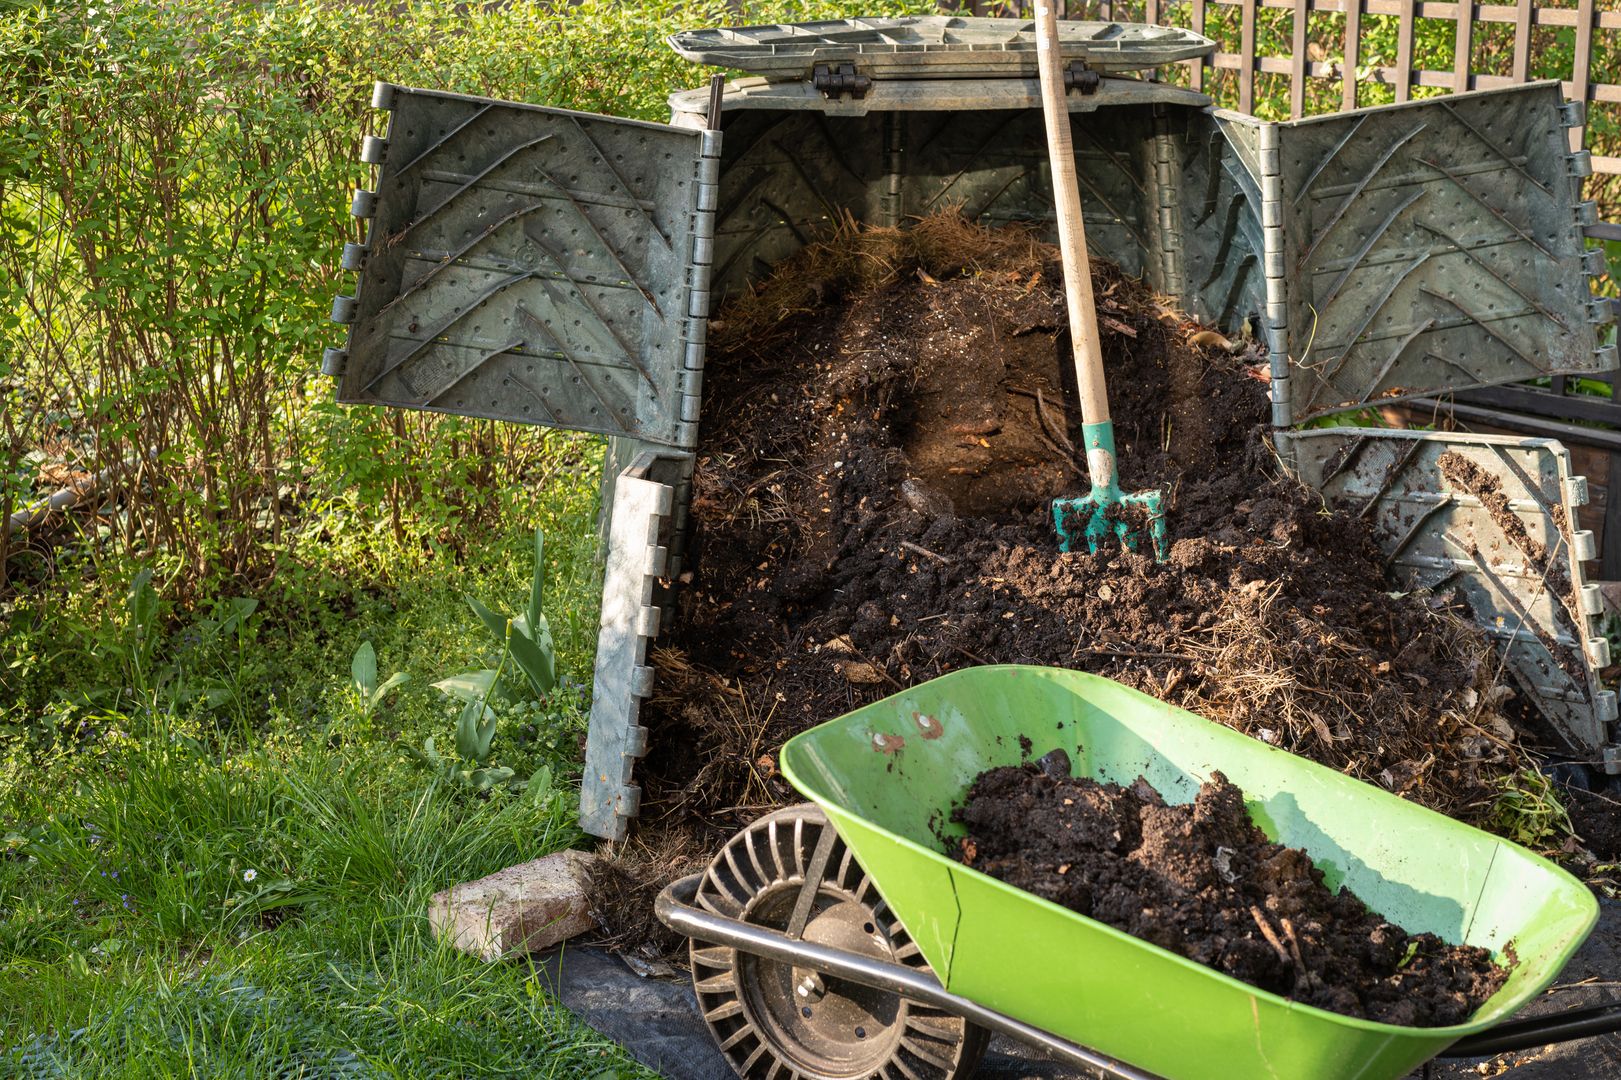 Dorzuć do kompostu. Efekty wywołają zazdrość w sąsiadach